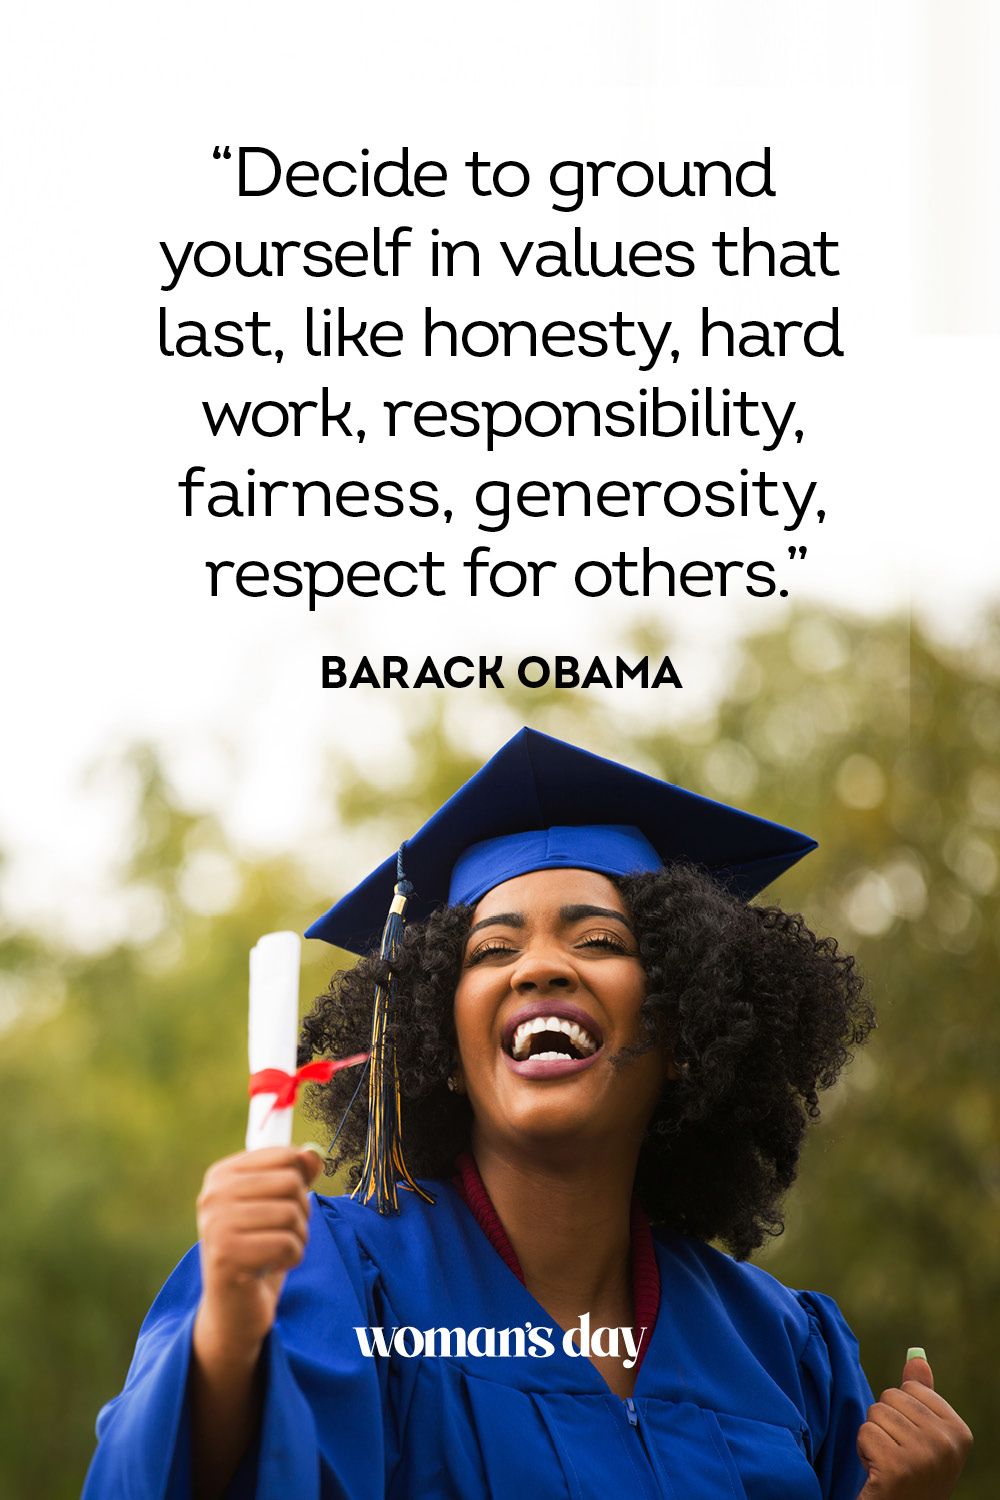 congratulations graduation quotes